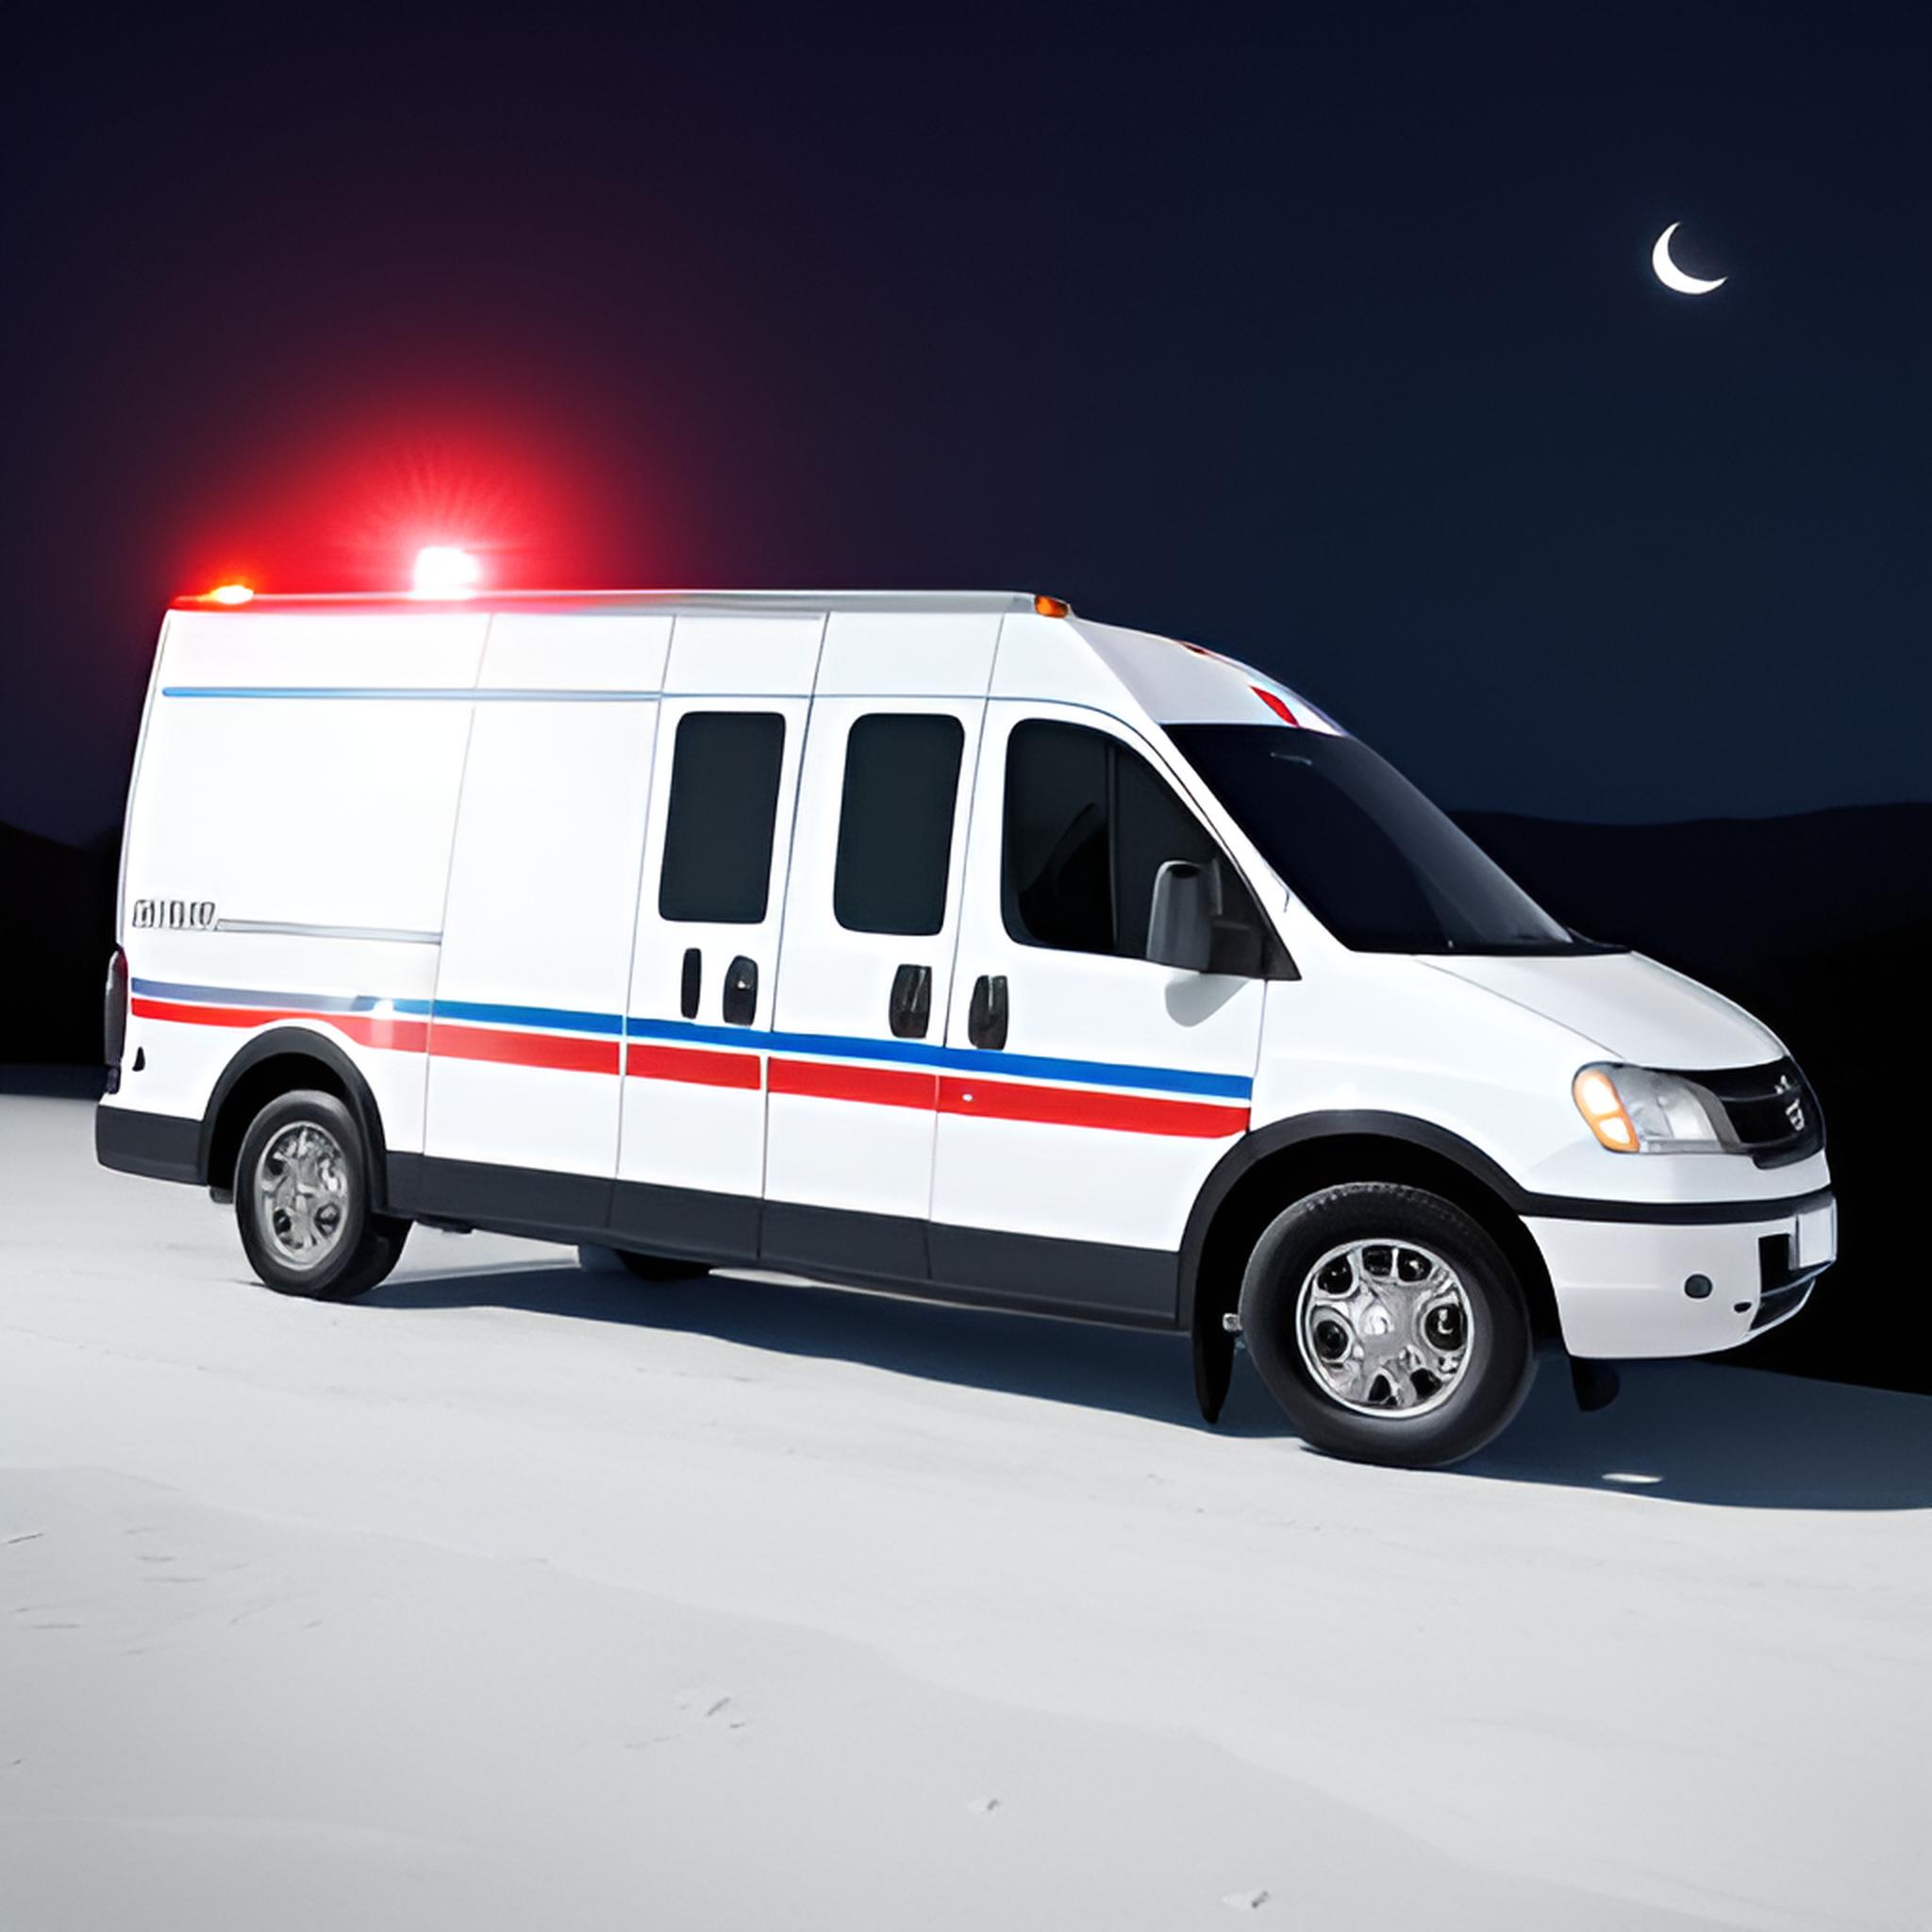 救护车与月球